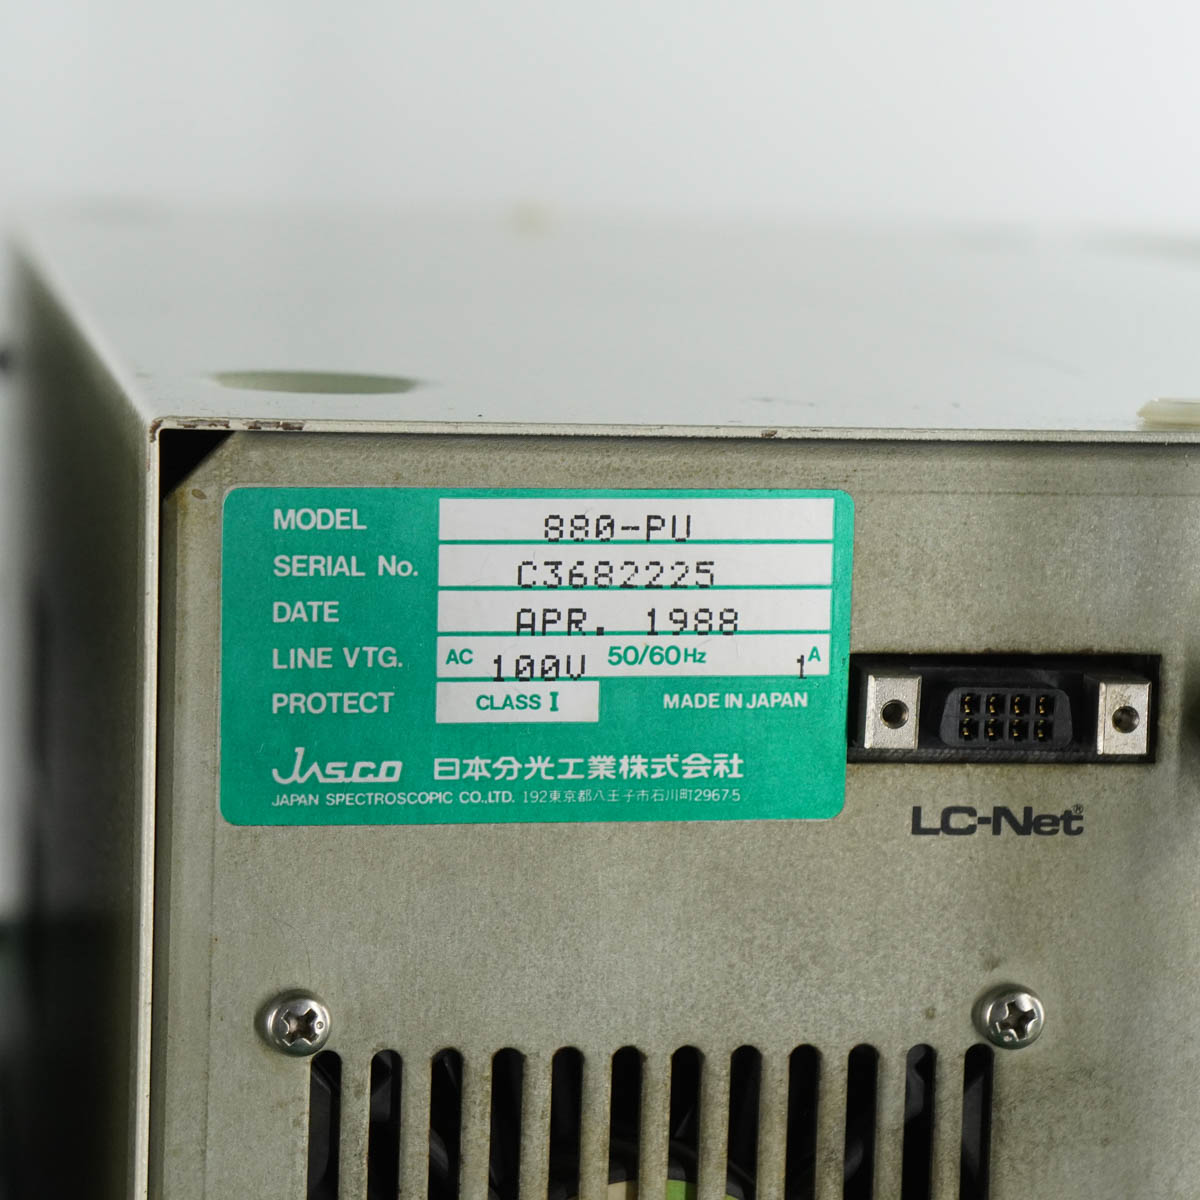 DW]USED セット JASCO 802-SC 880-PU 875-UV 851-AS 860-CO HPLC 液クロ 液体クロマトグラフ  電源コード [05334-0007] 分析機器,液体クロマトグラフ 中古販売分析機器計測器総合商社ディルウィングス